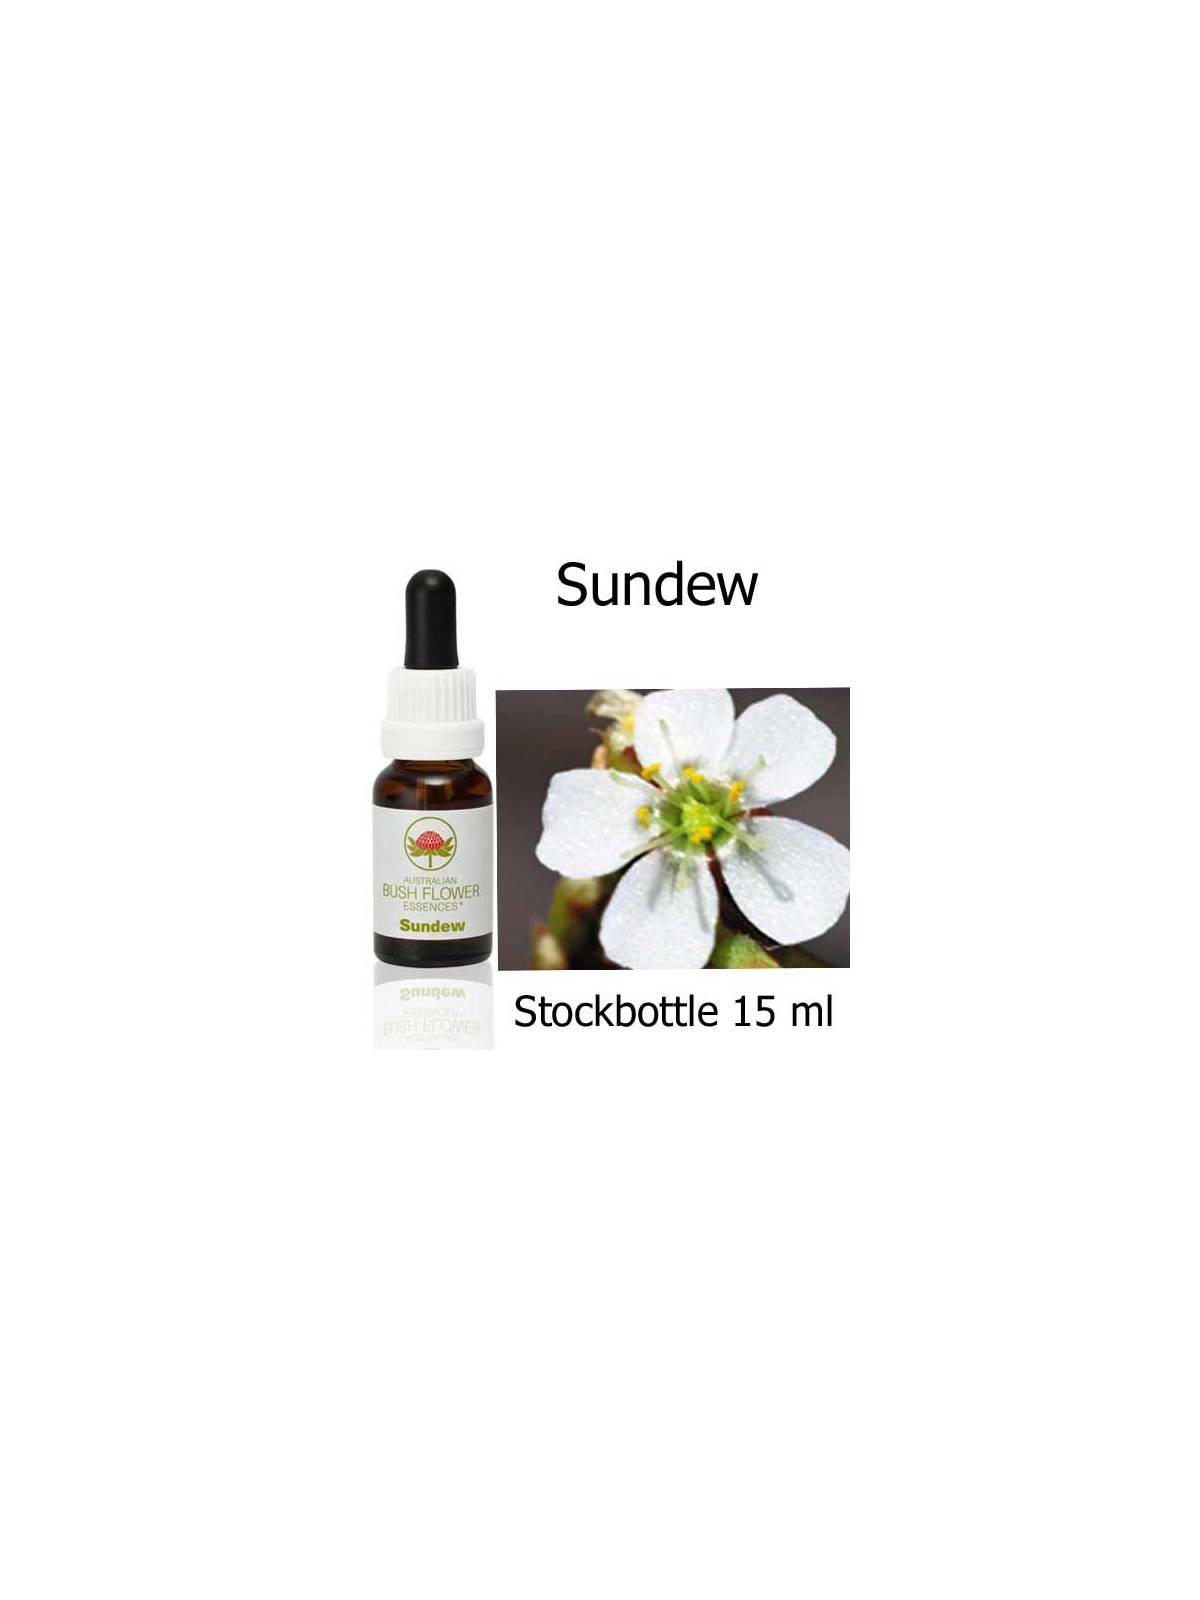 Sundew Australian Bush Flower Essences stockbottles